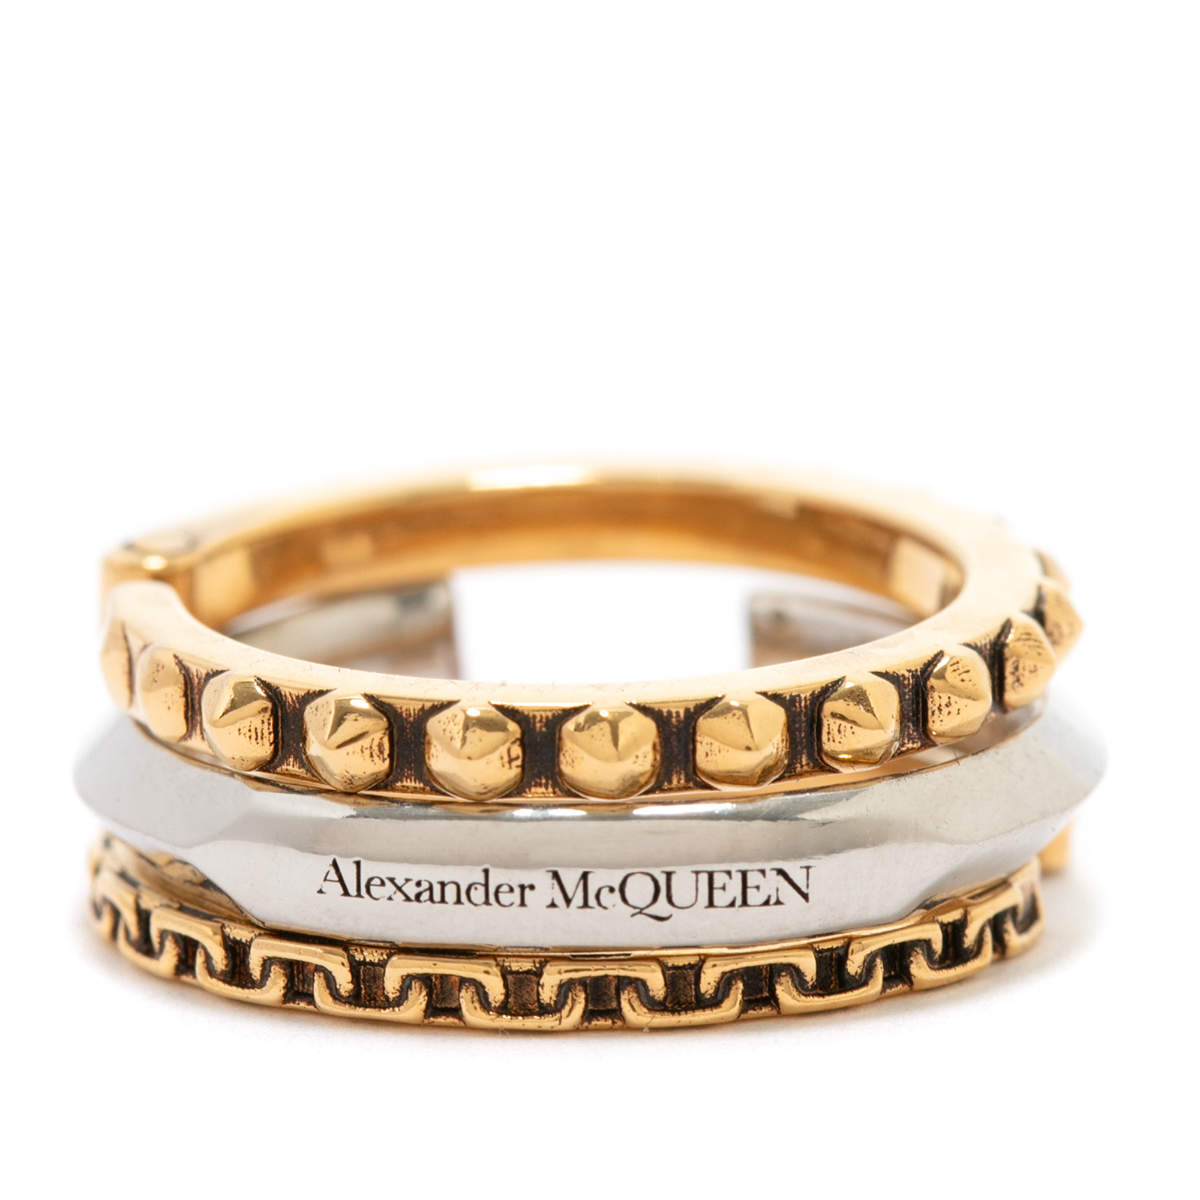 Alexander McQueen: Autumn Winter 2021 Jewellery